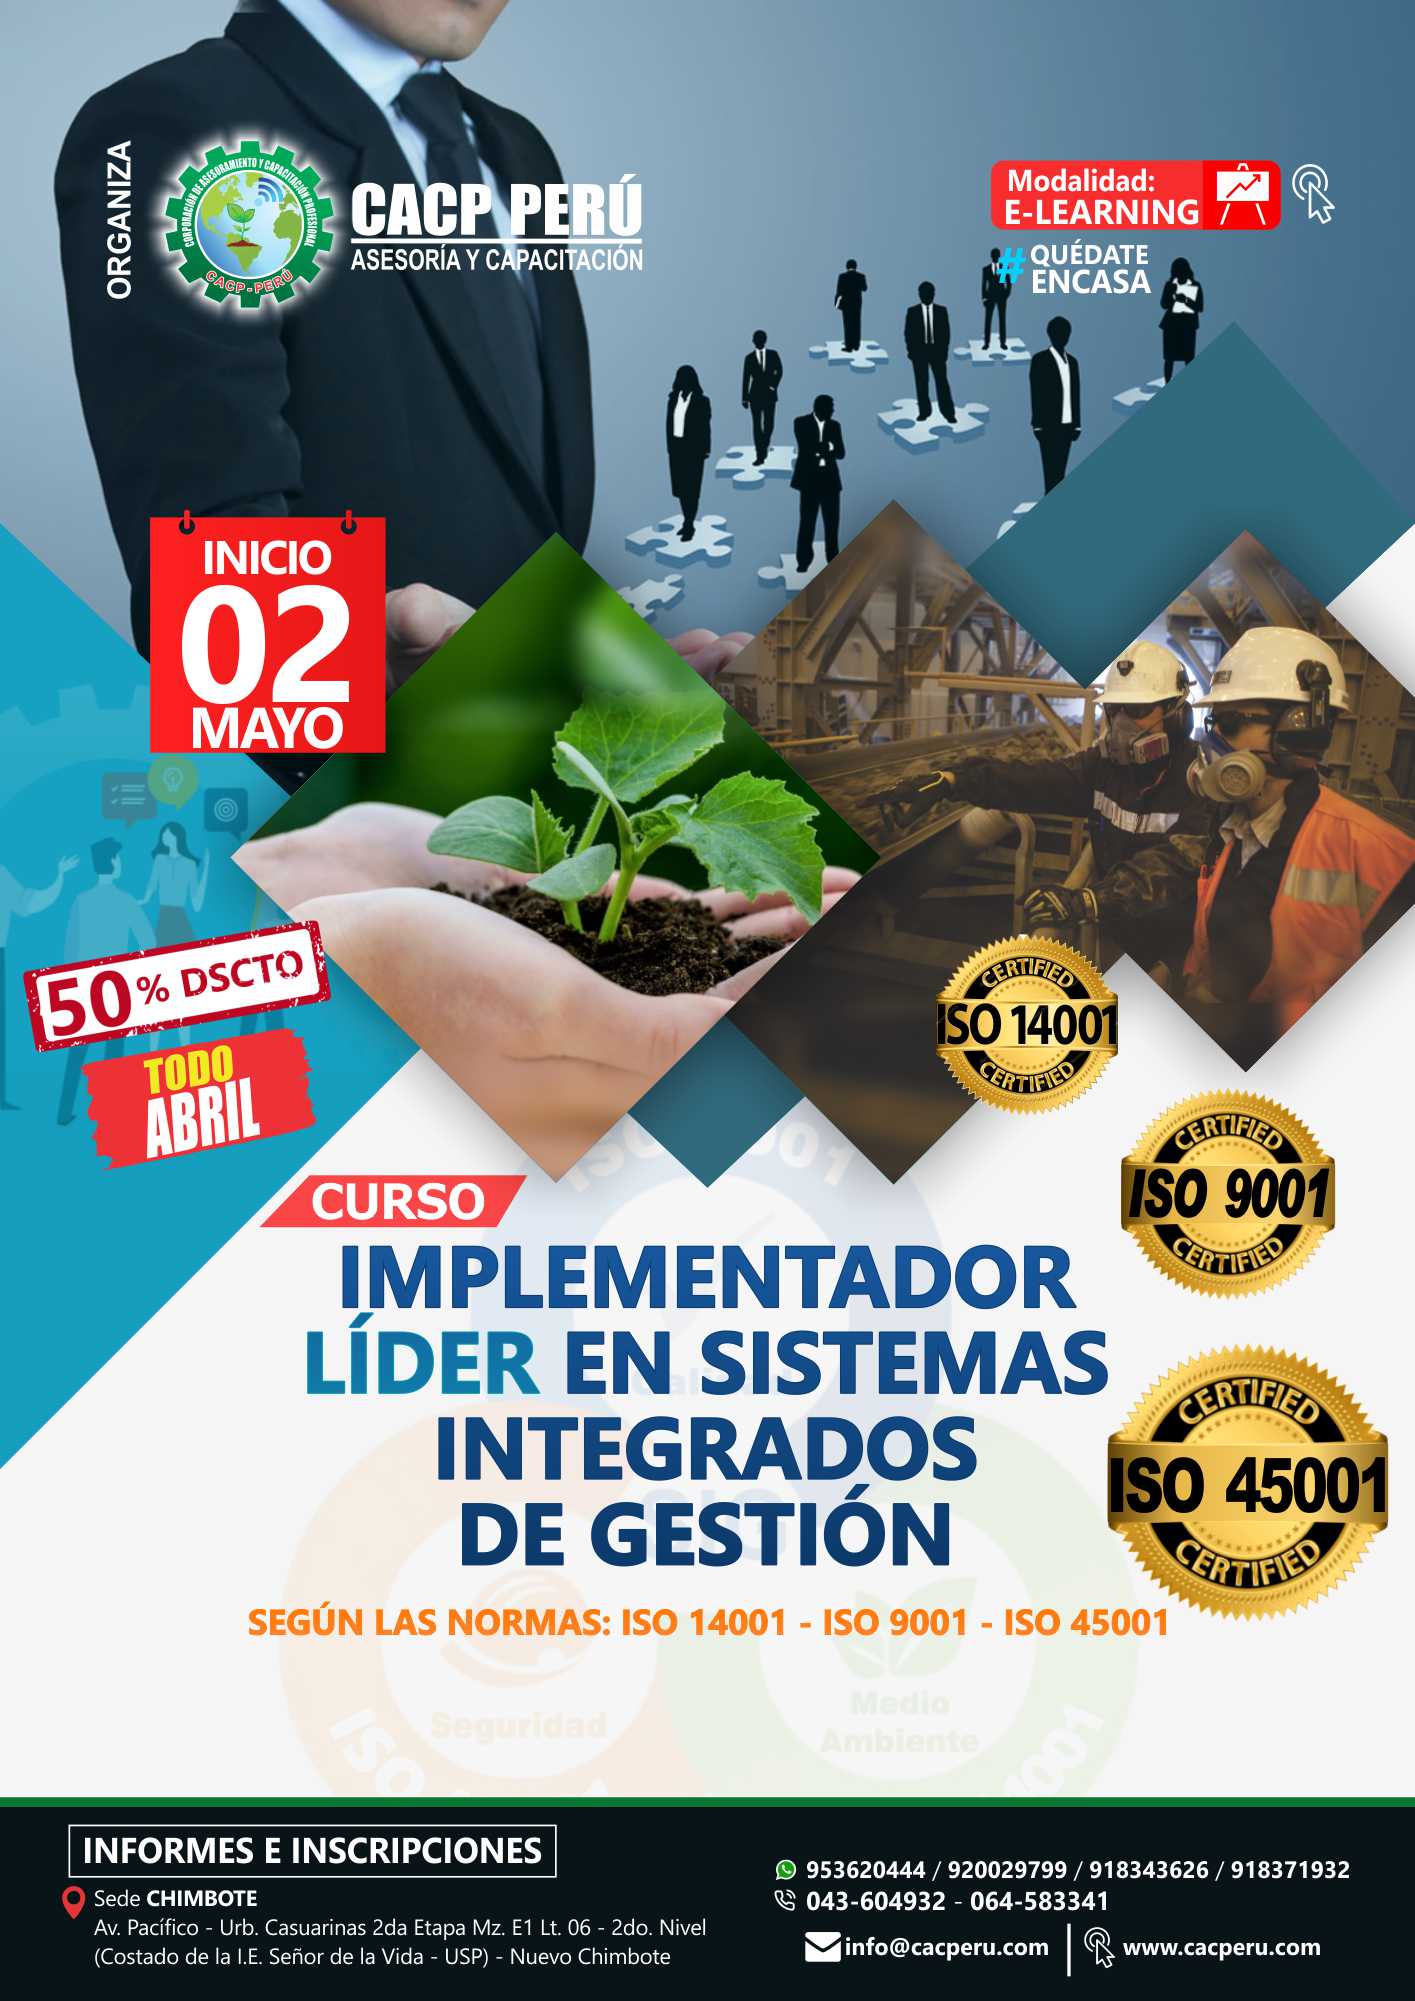 Cacp Perú Curso Implementador Líder En Sistemas Integrados De Gestión 2020 1 9665